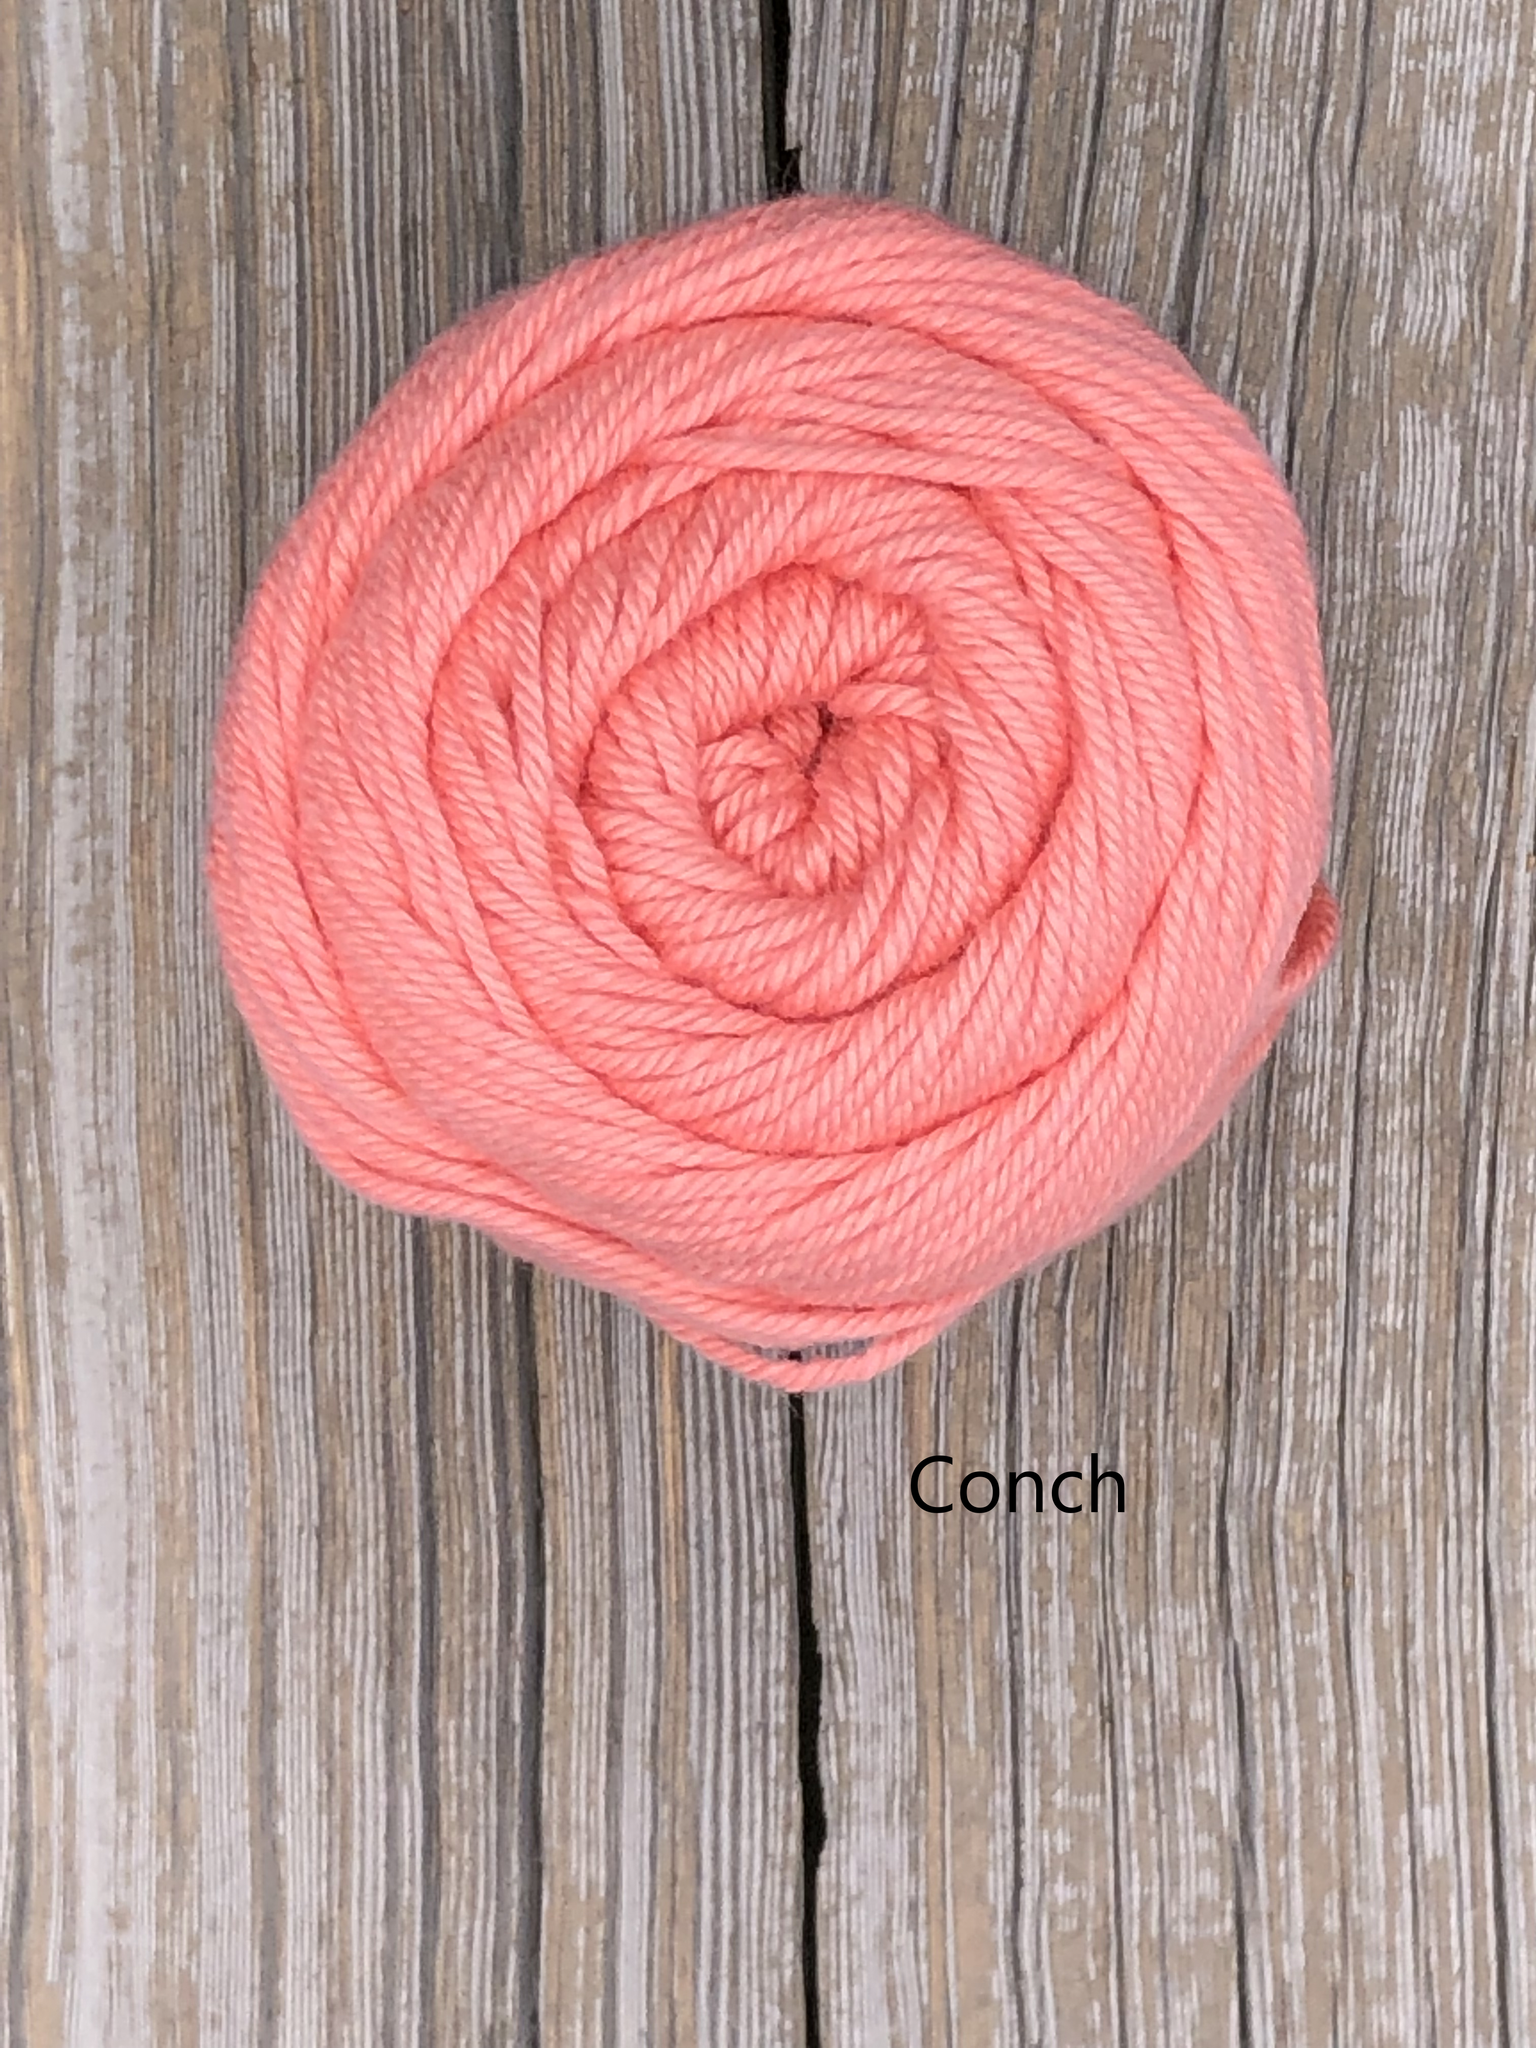 New Knit Picks Dishie Twist – Polly Knitter